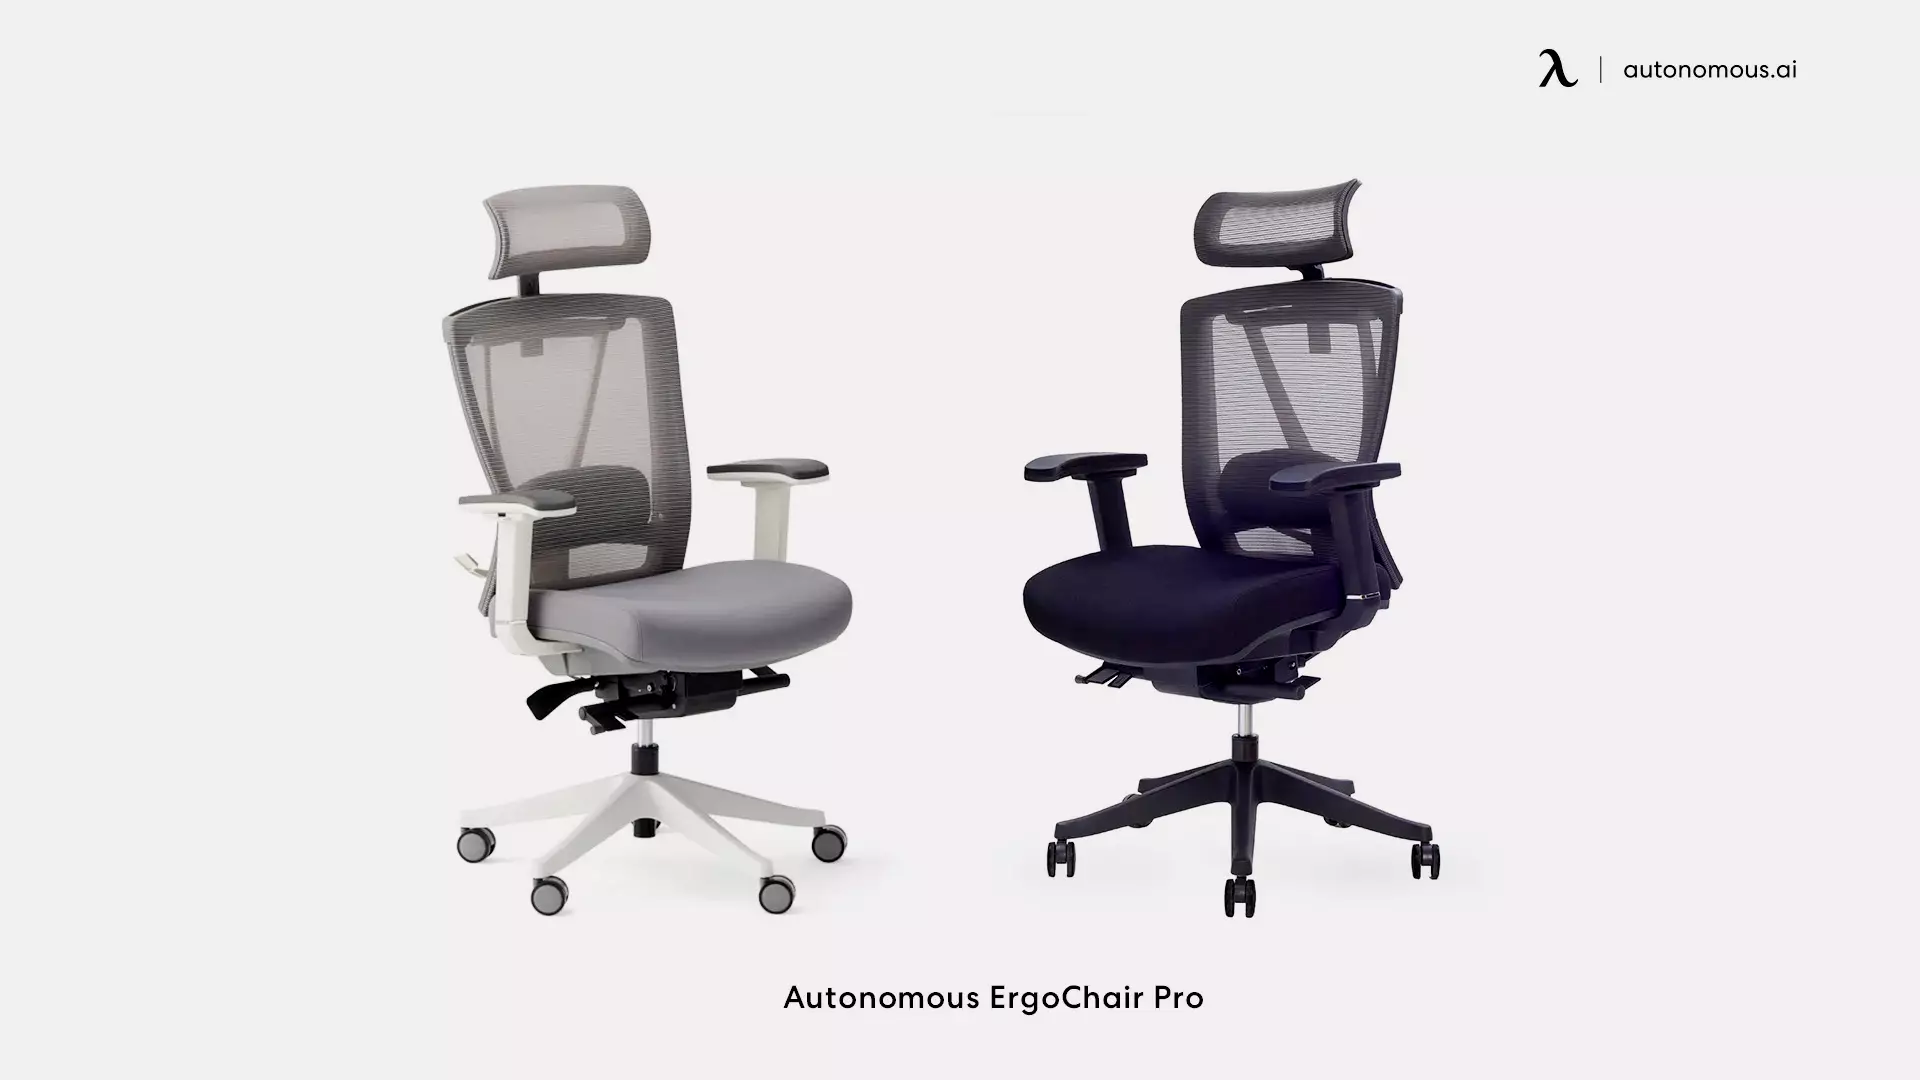 ErgoChair Pro business office chair